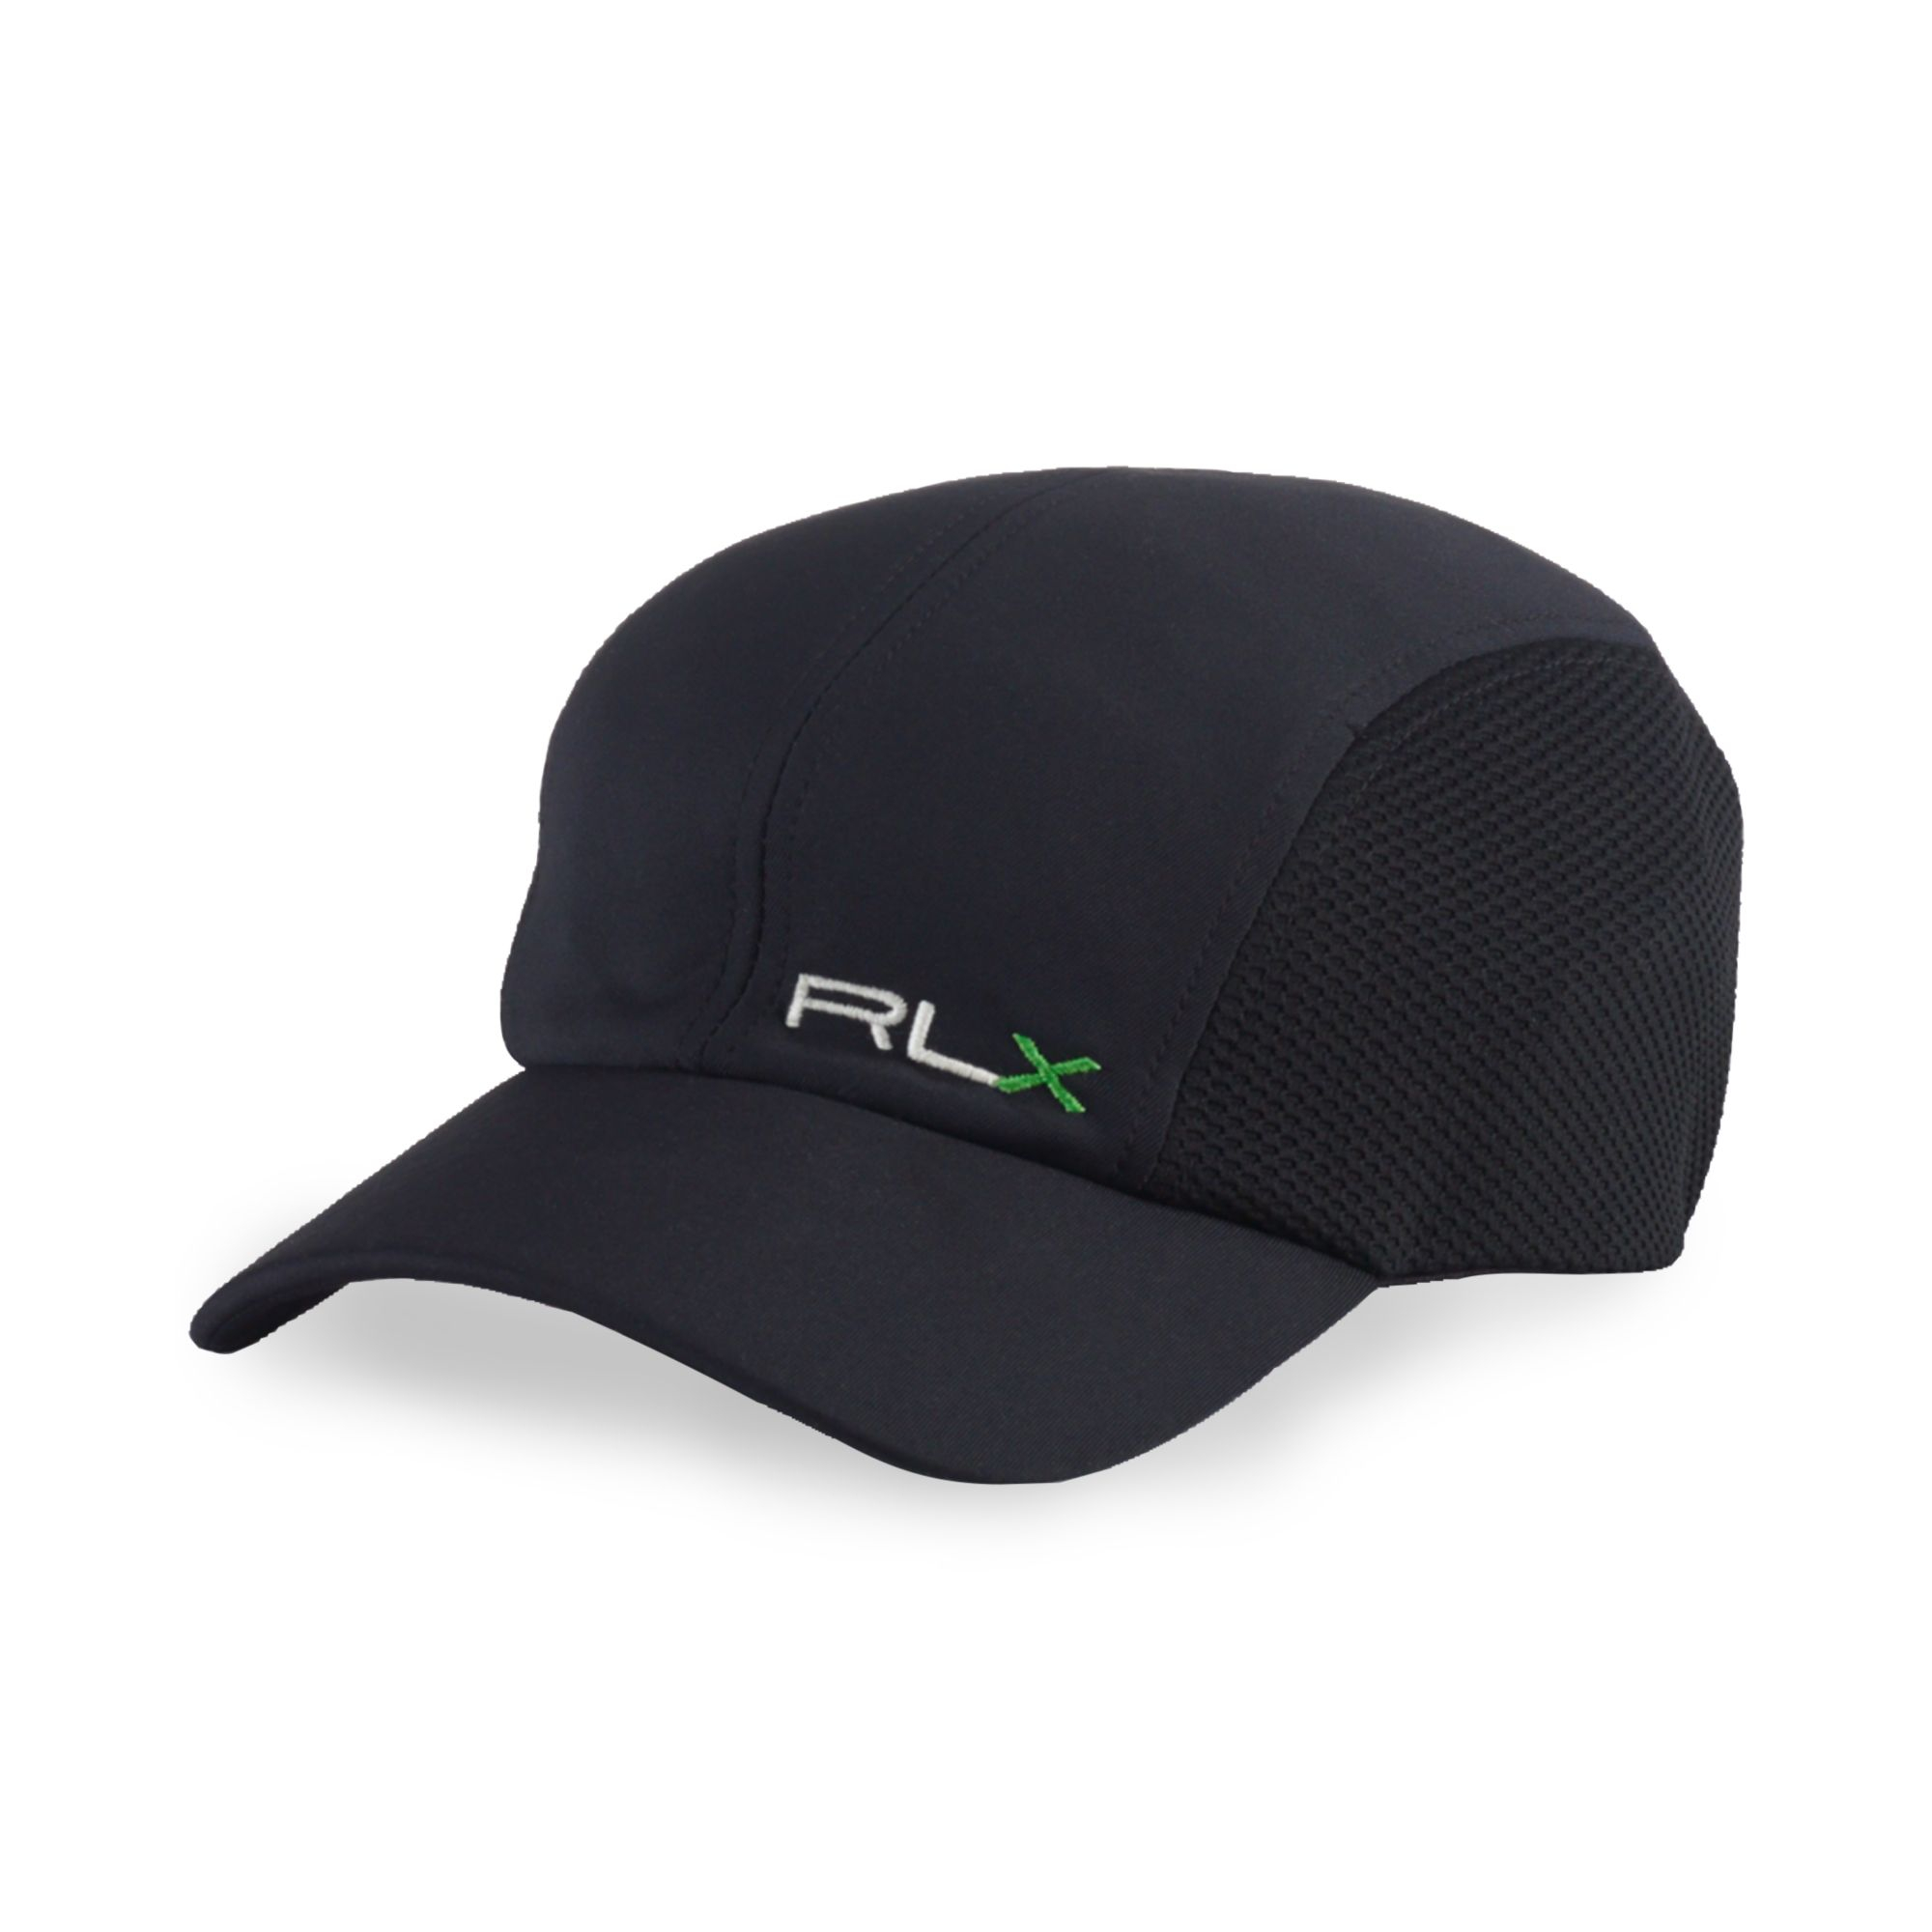 Ralph Lauren Polo Rlx Eco Cap in Black for Men - Lyst